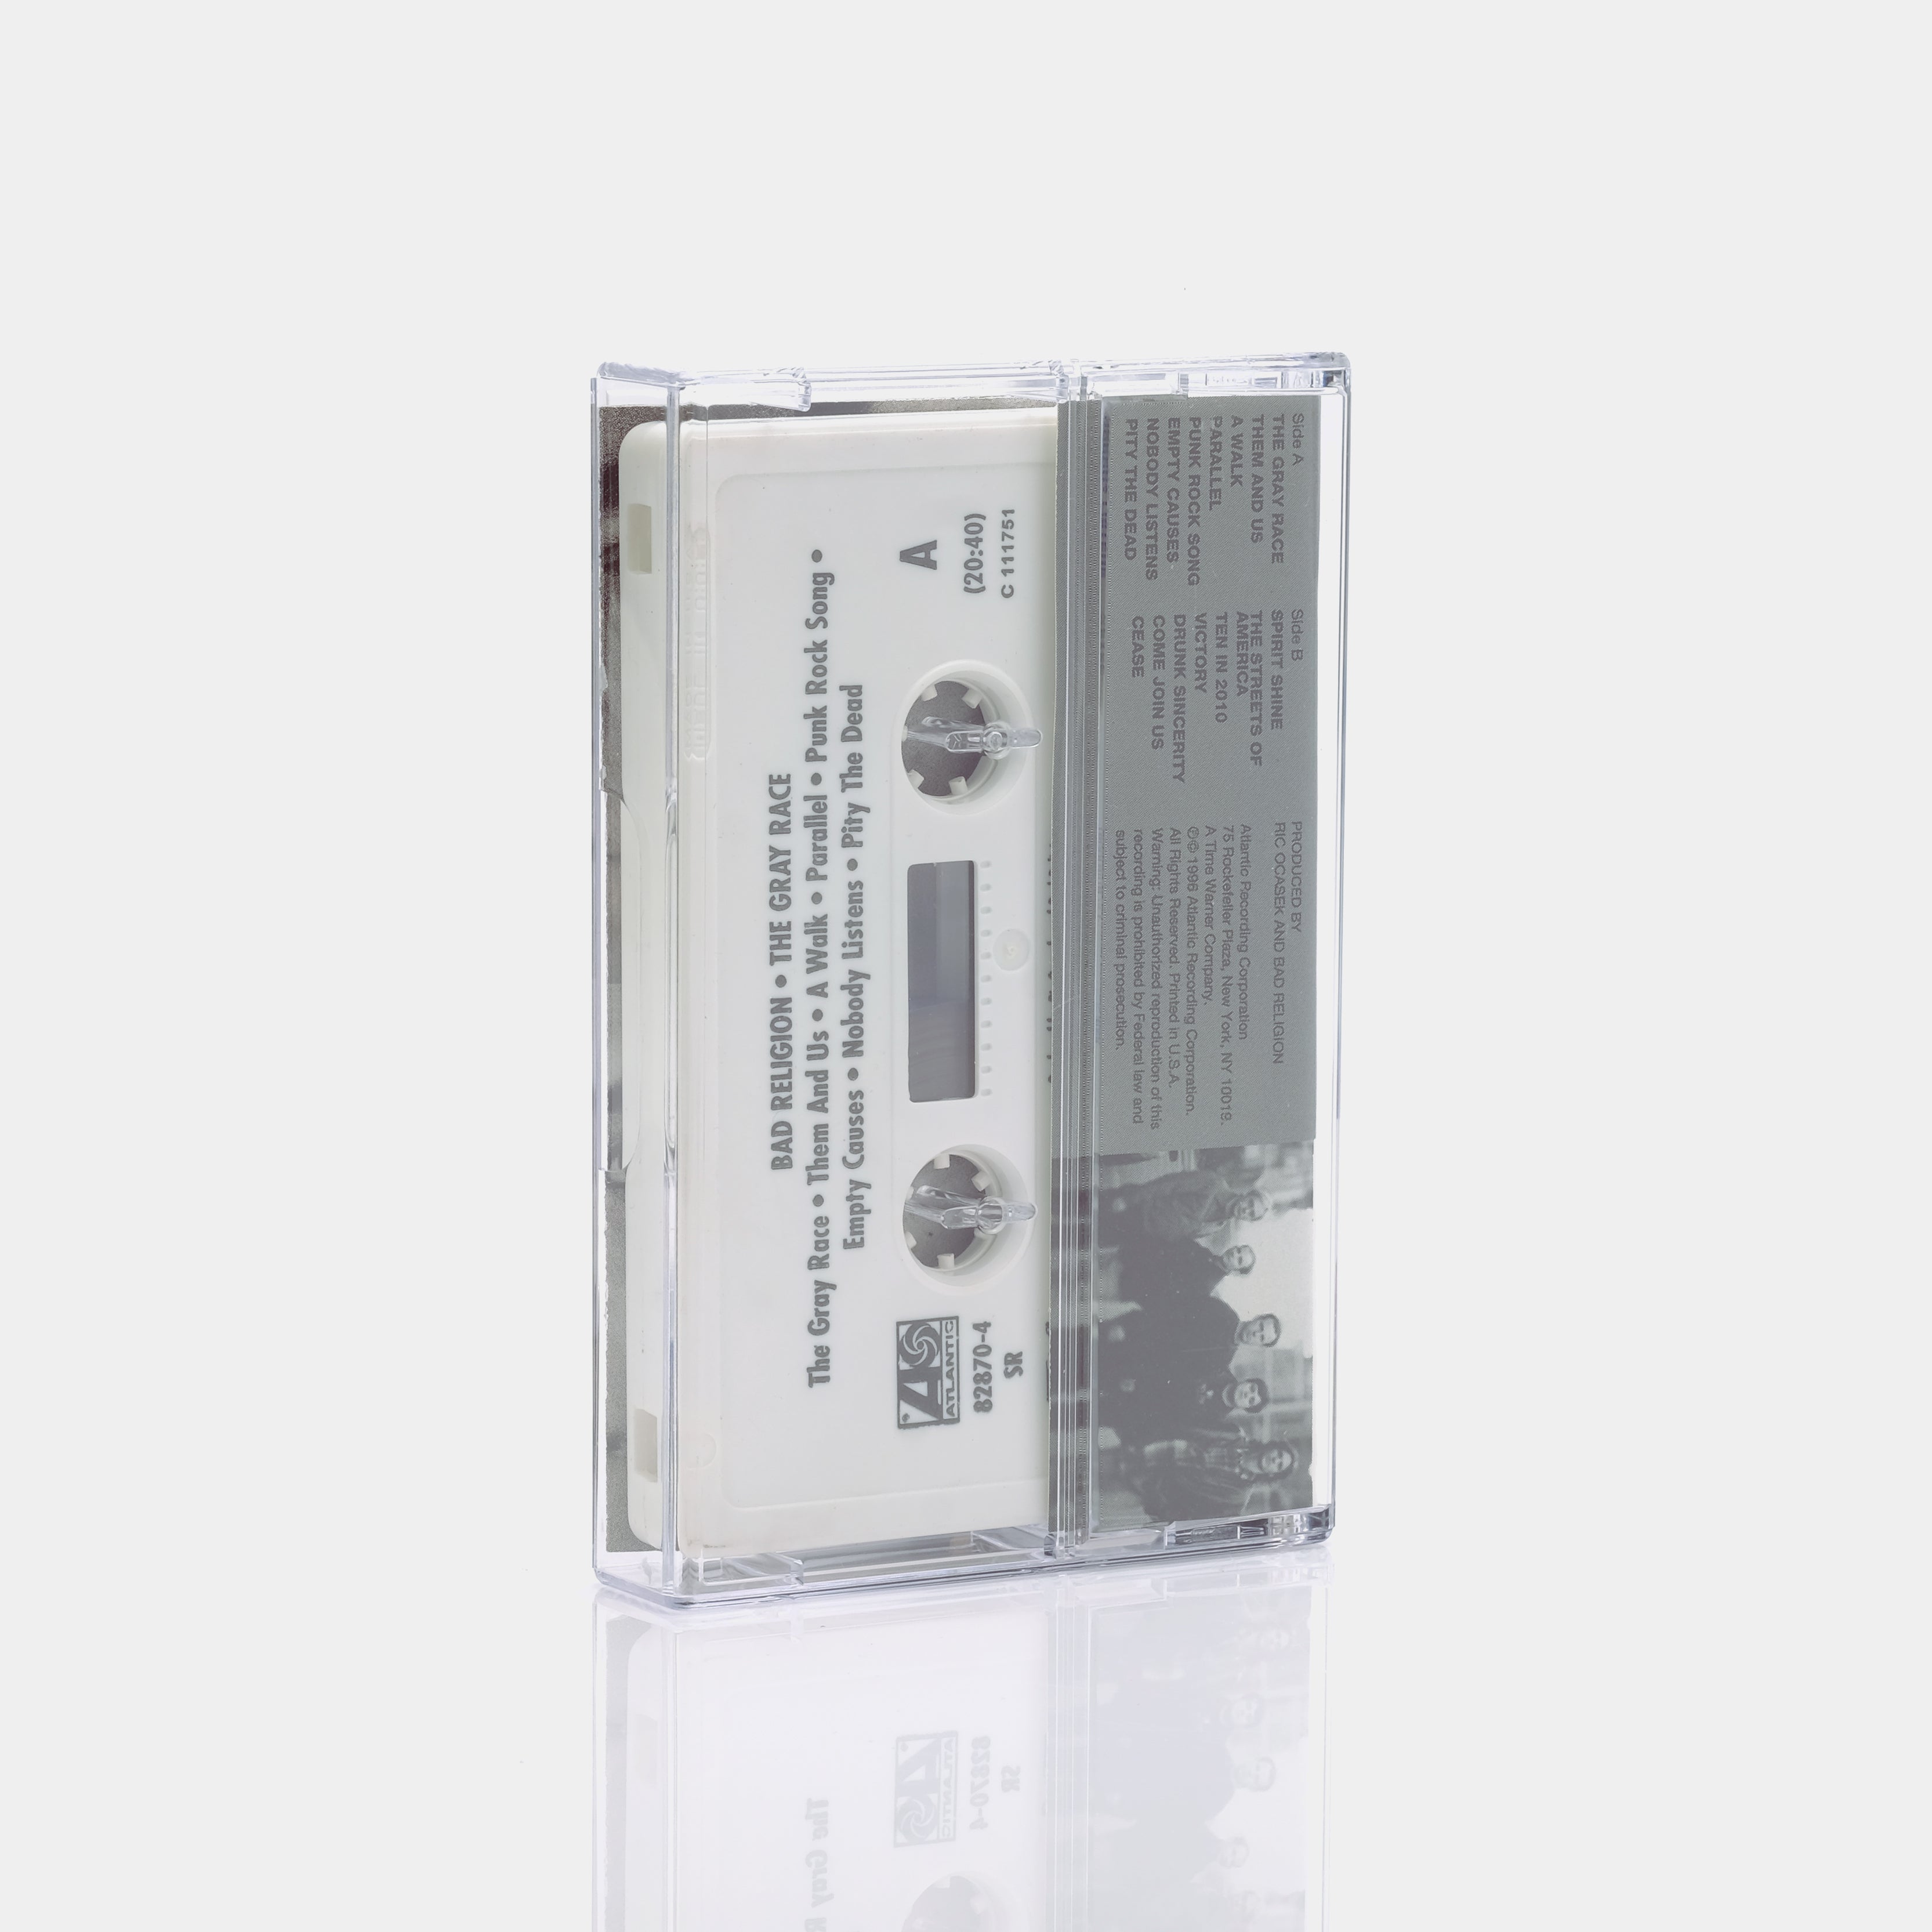 The Gray Race - Bad Religion Cassette Tape